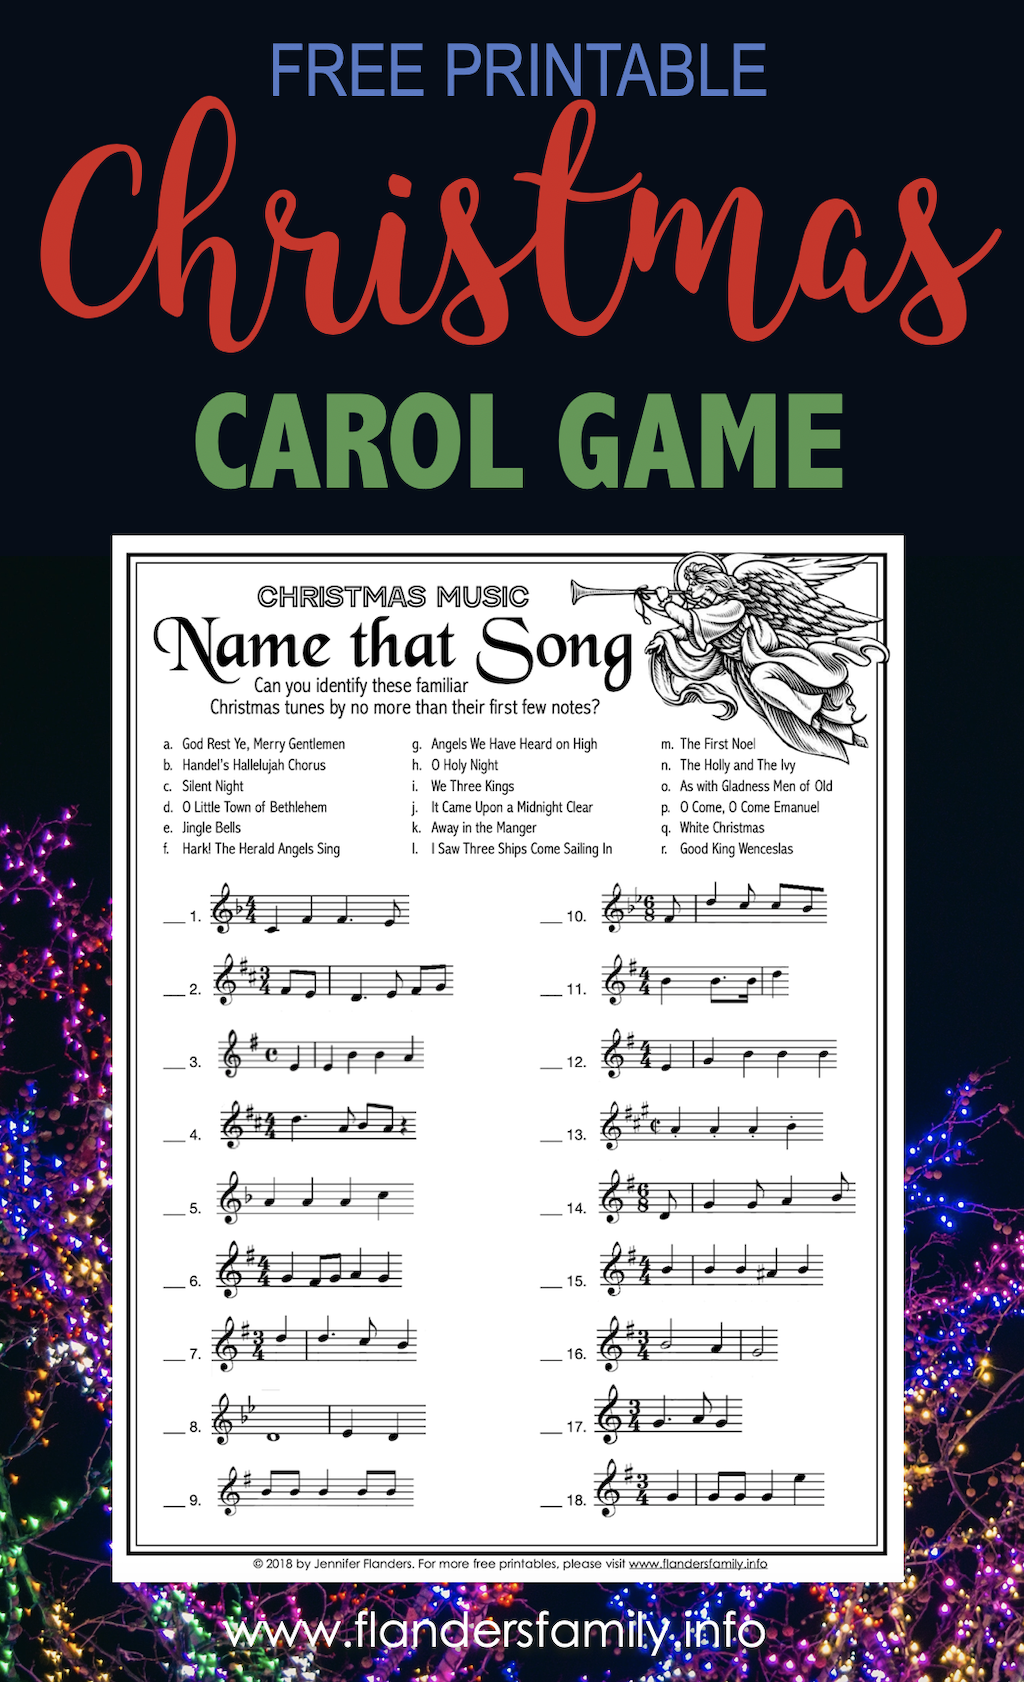 Name that Christmas Song Game